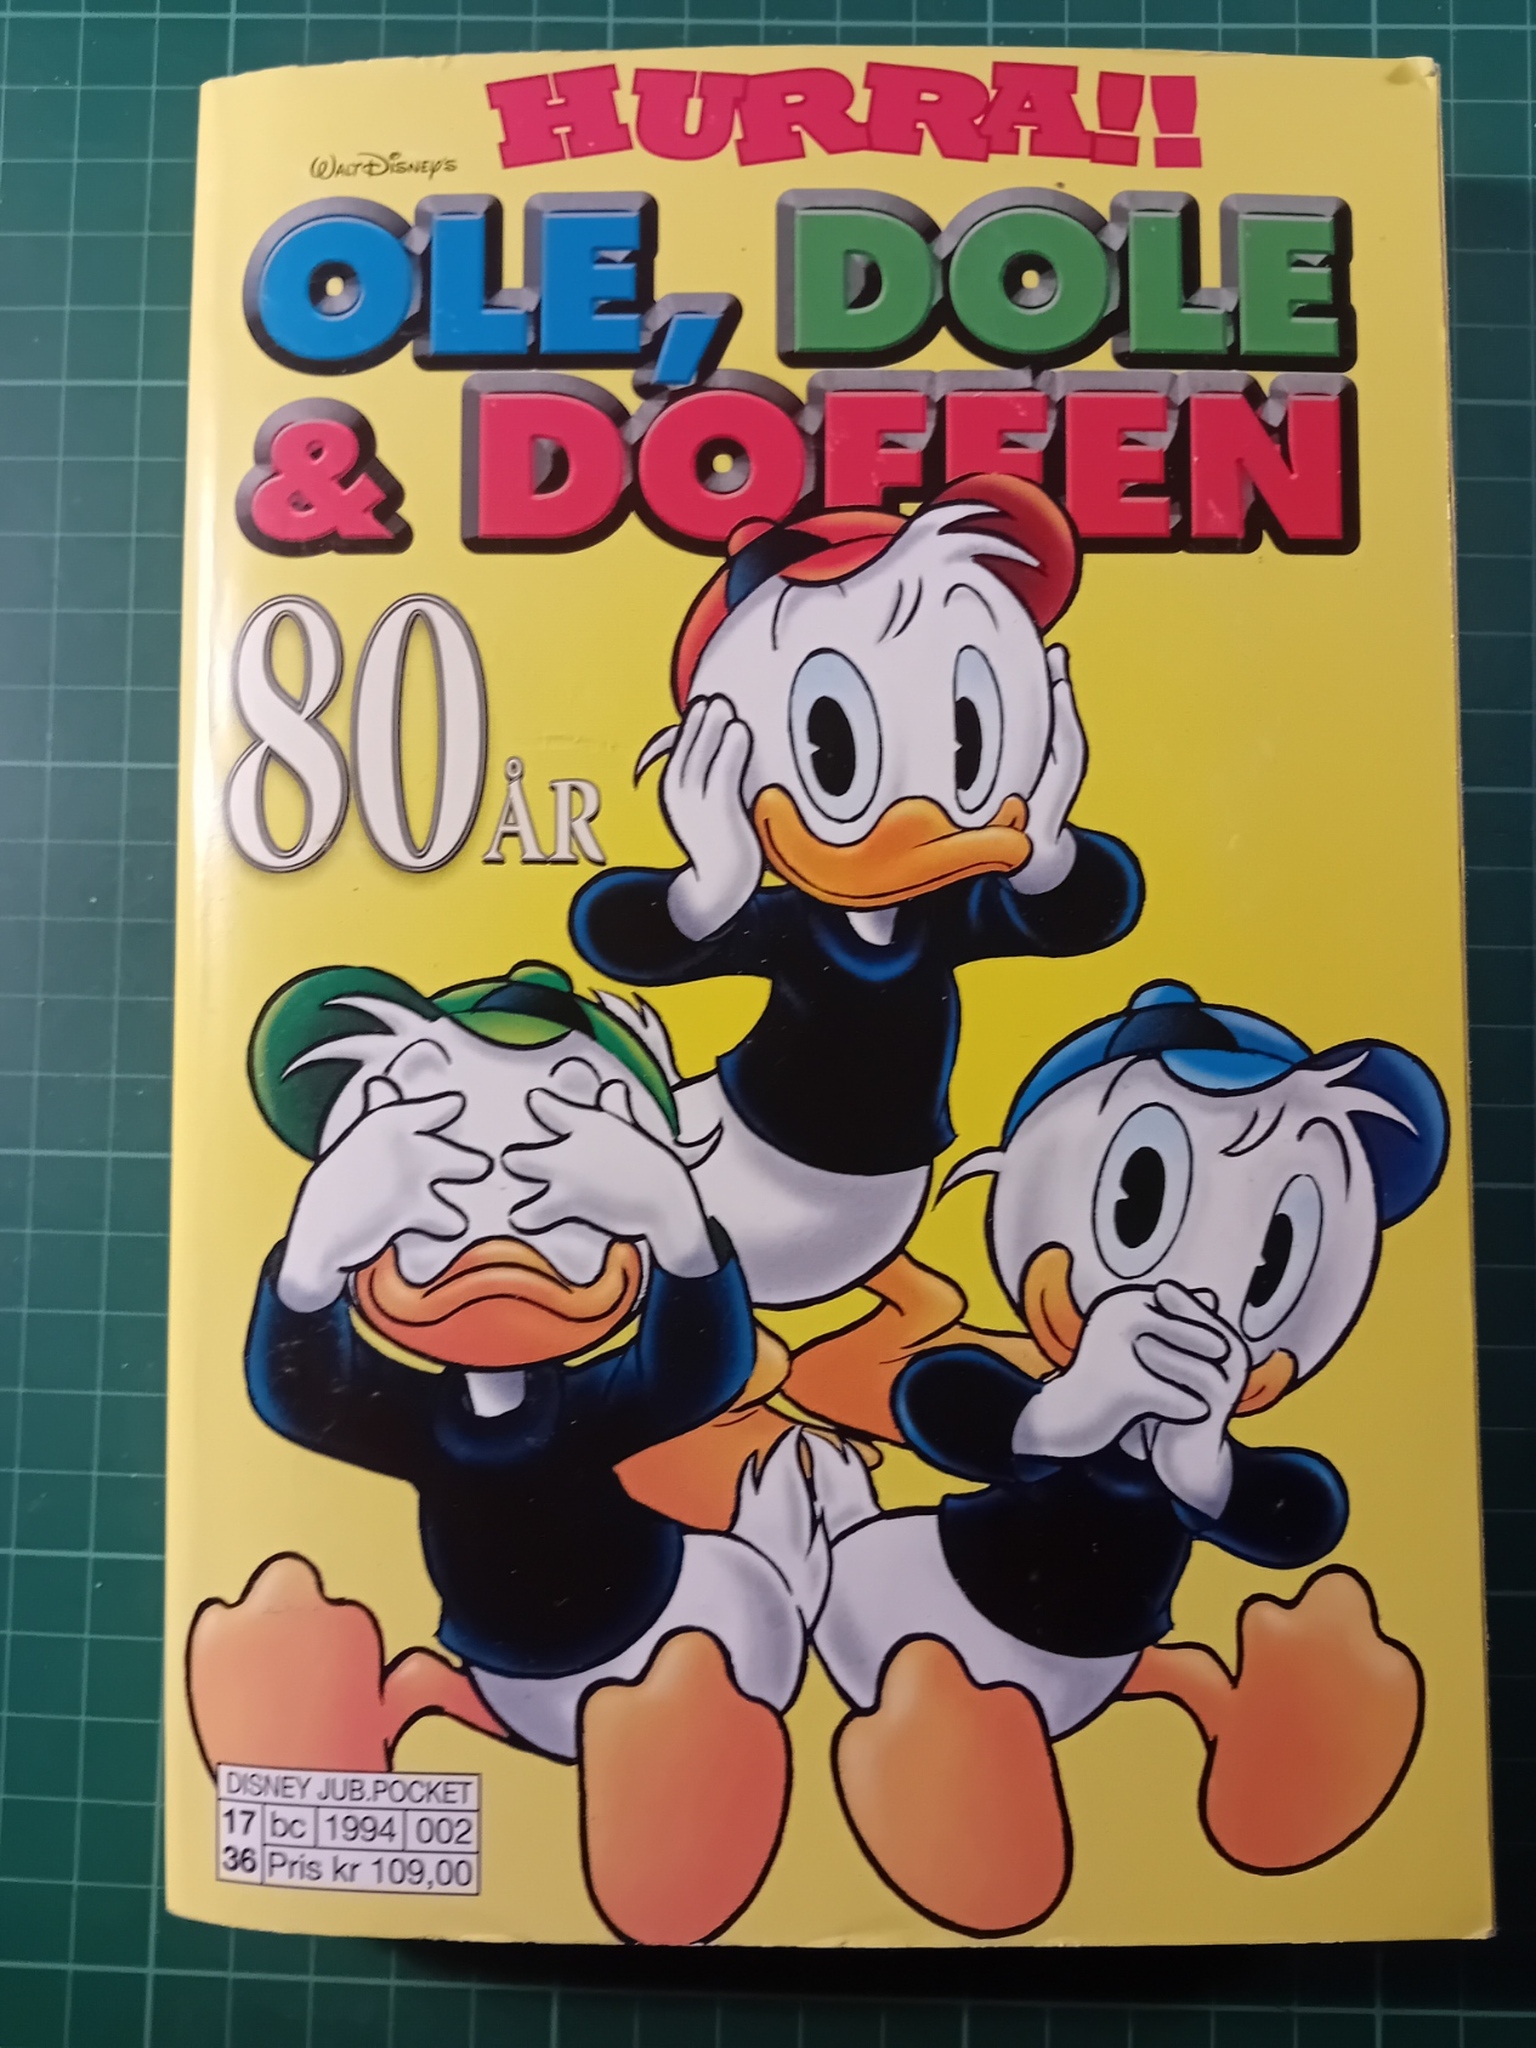 Hurra!! Ole, Dole & Doffen 80 år